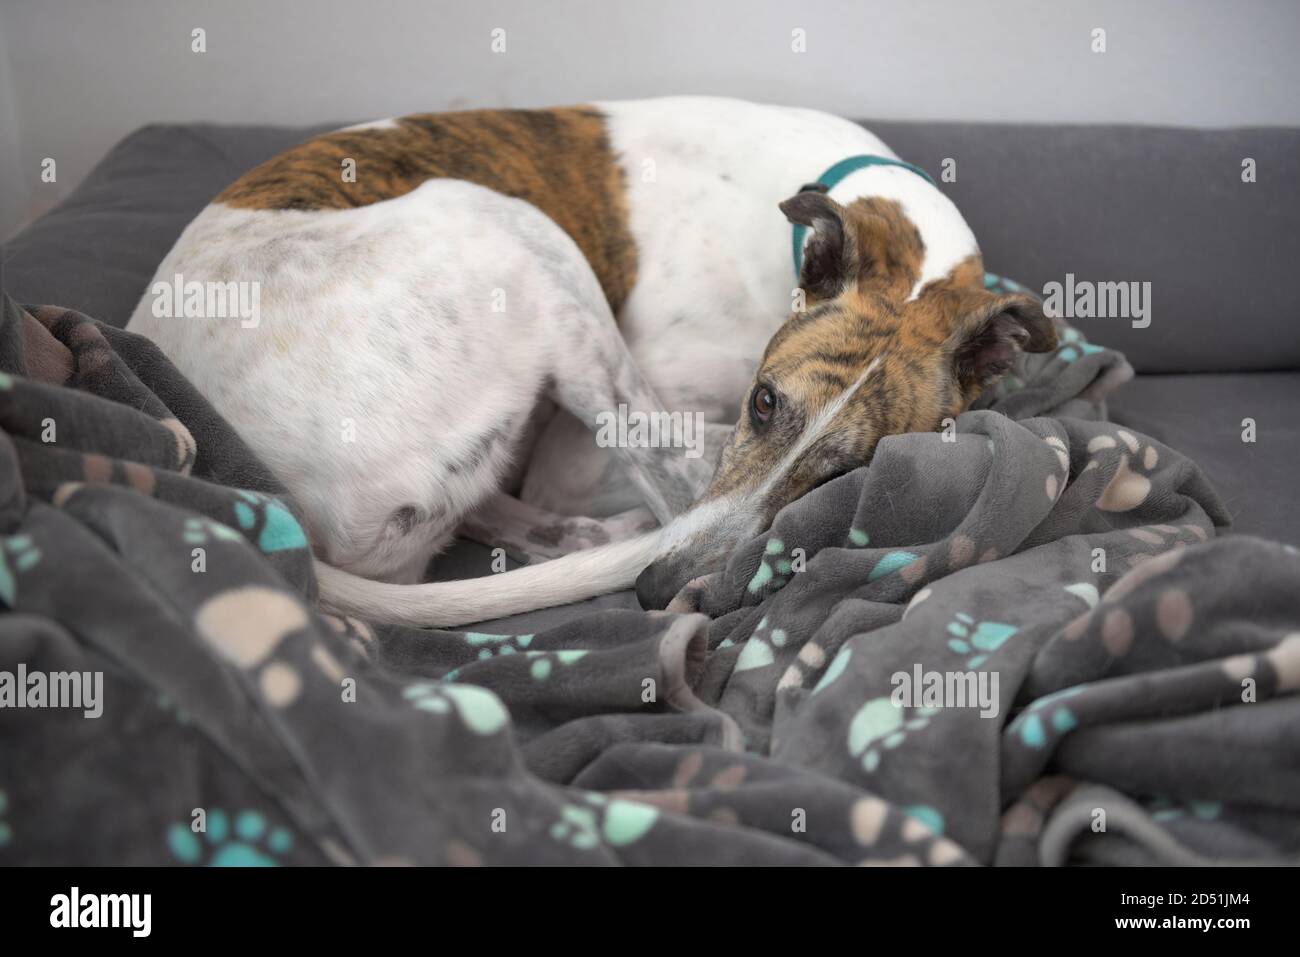 Un animal de compagnie bringé et patché blanc adopté greyhound se courbe en une couverture chaude pour chien sur un lit de chien gris. Regarde directement la caméra avec les yeux bruns. Banque D'Images